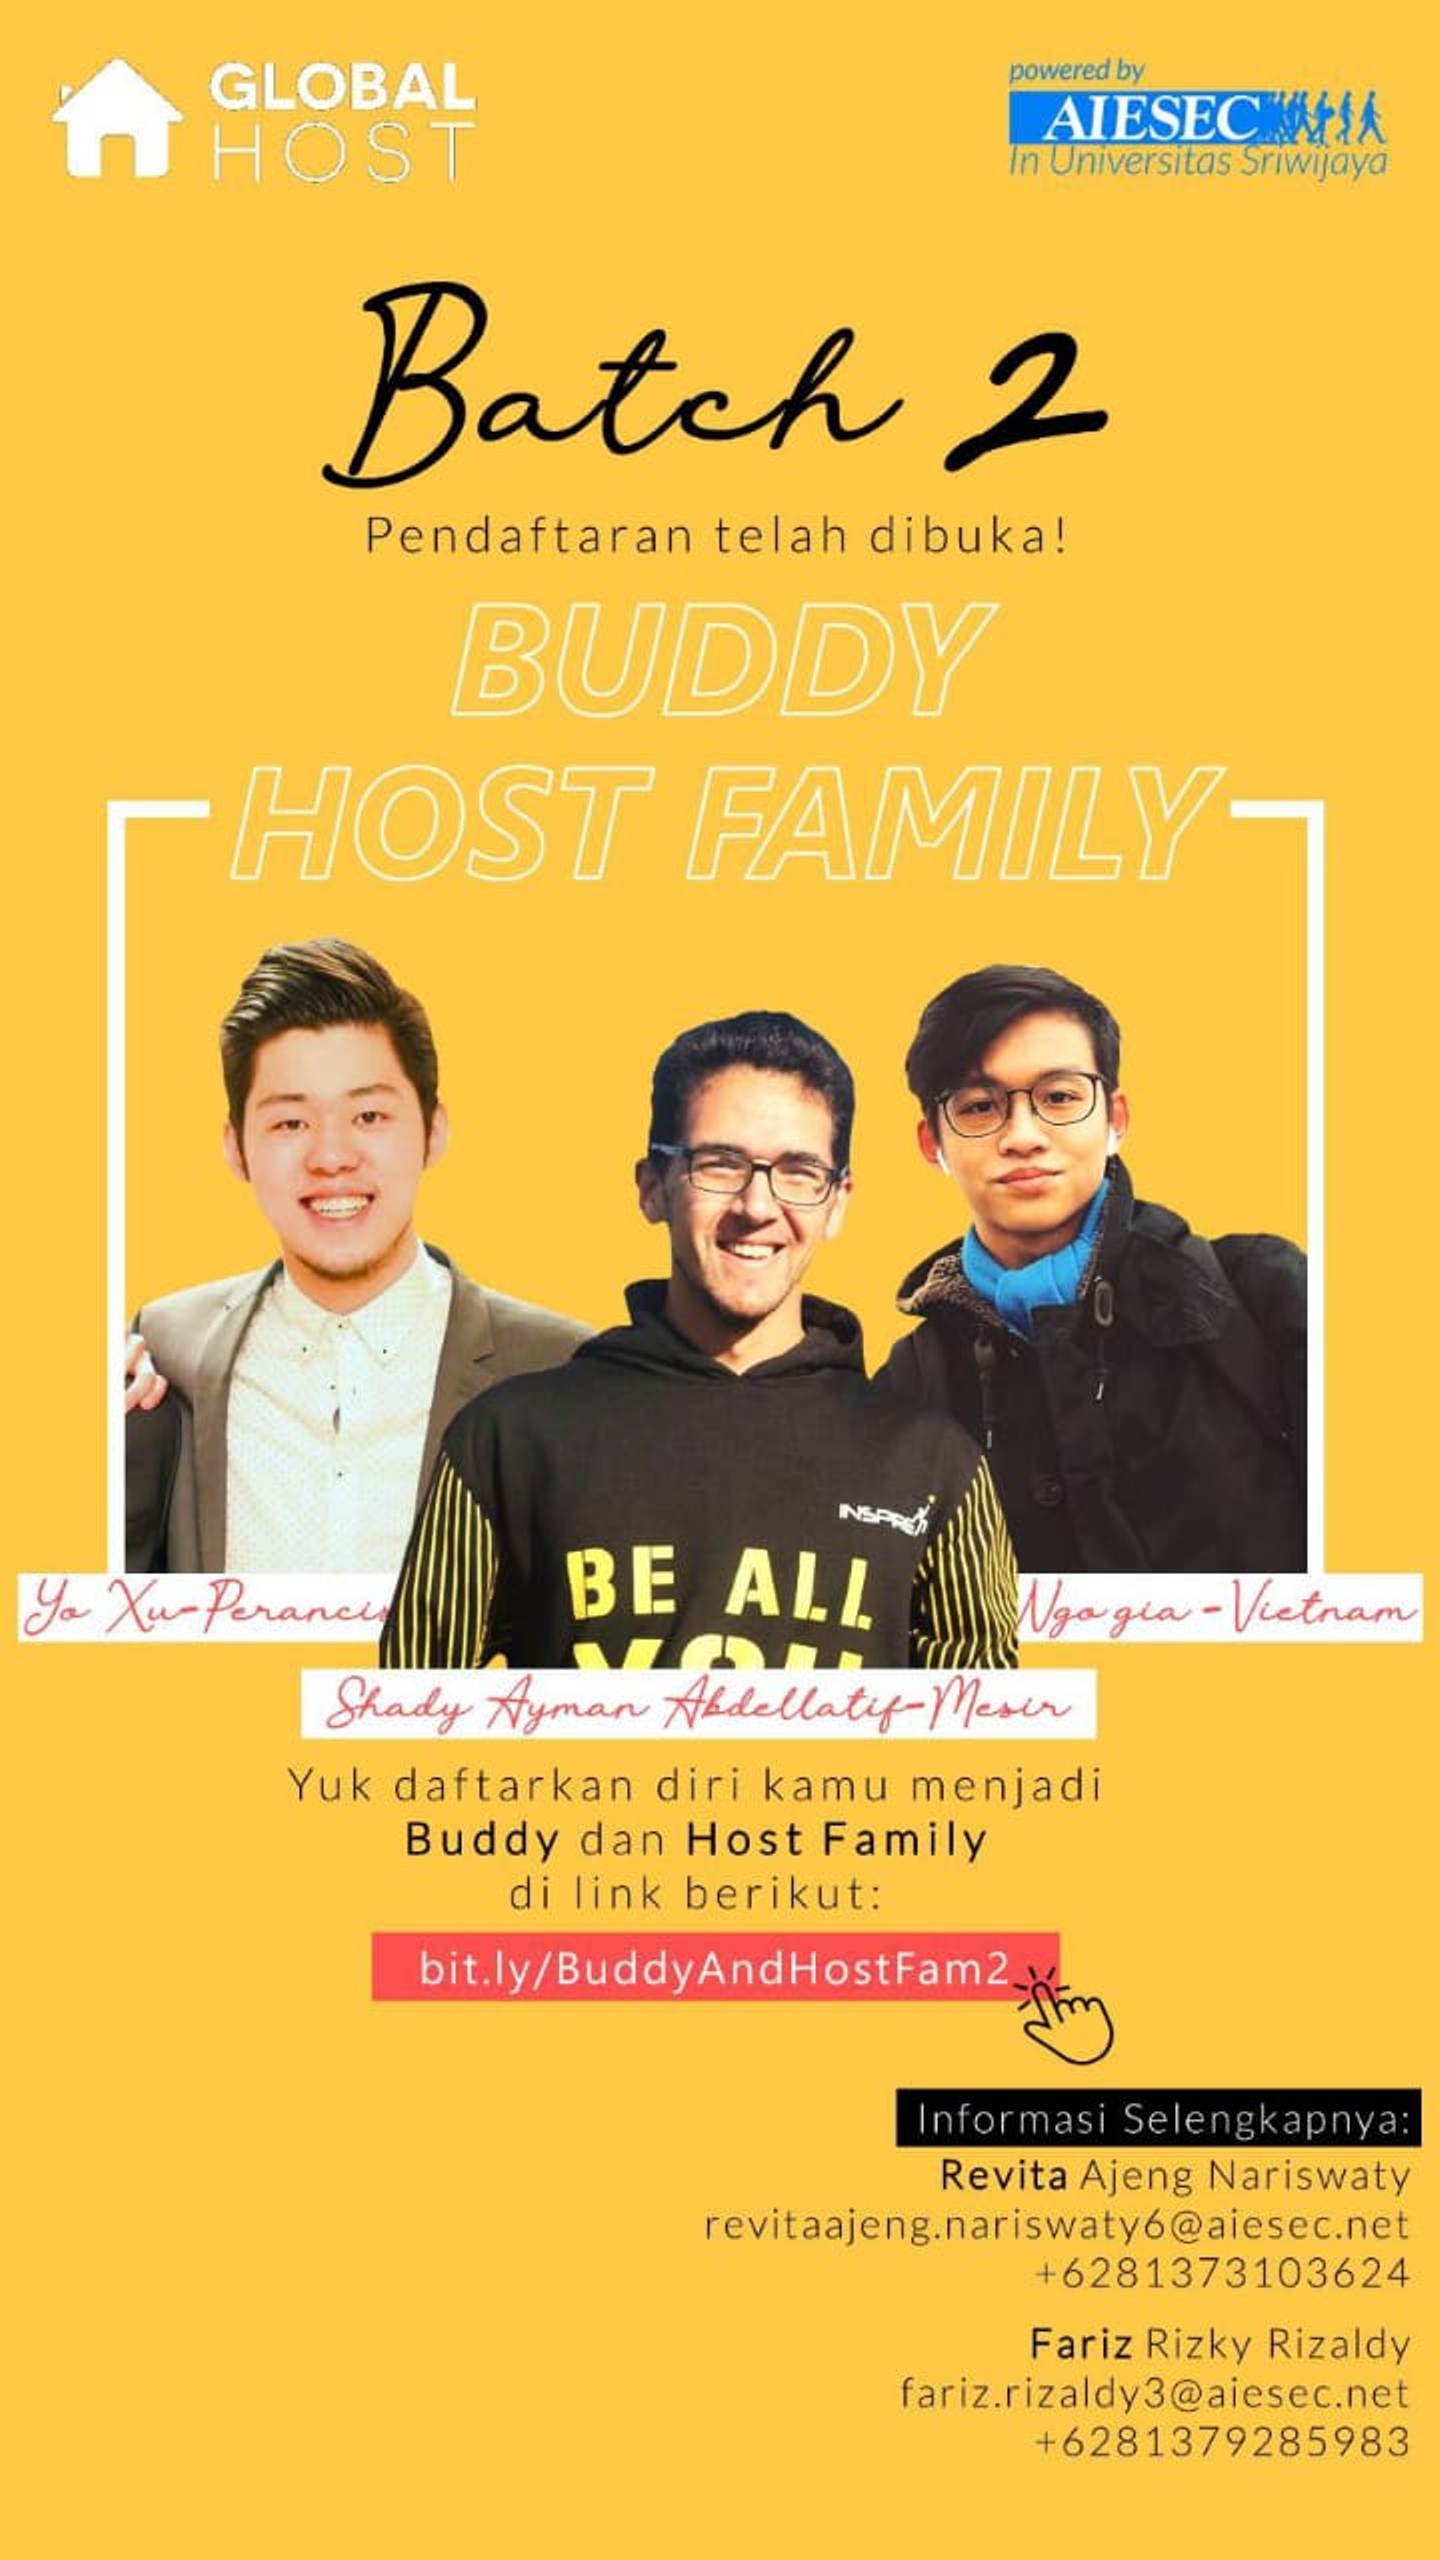 AIESEC Unsri Buka Pendaftaran Buddy dan Host Family. Tertarik?